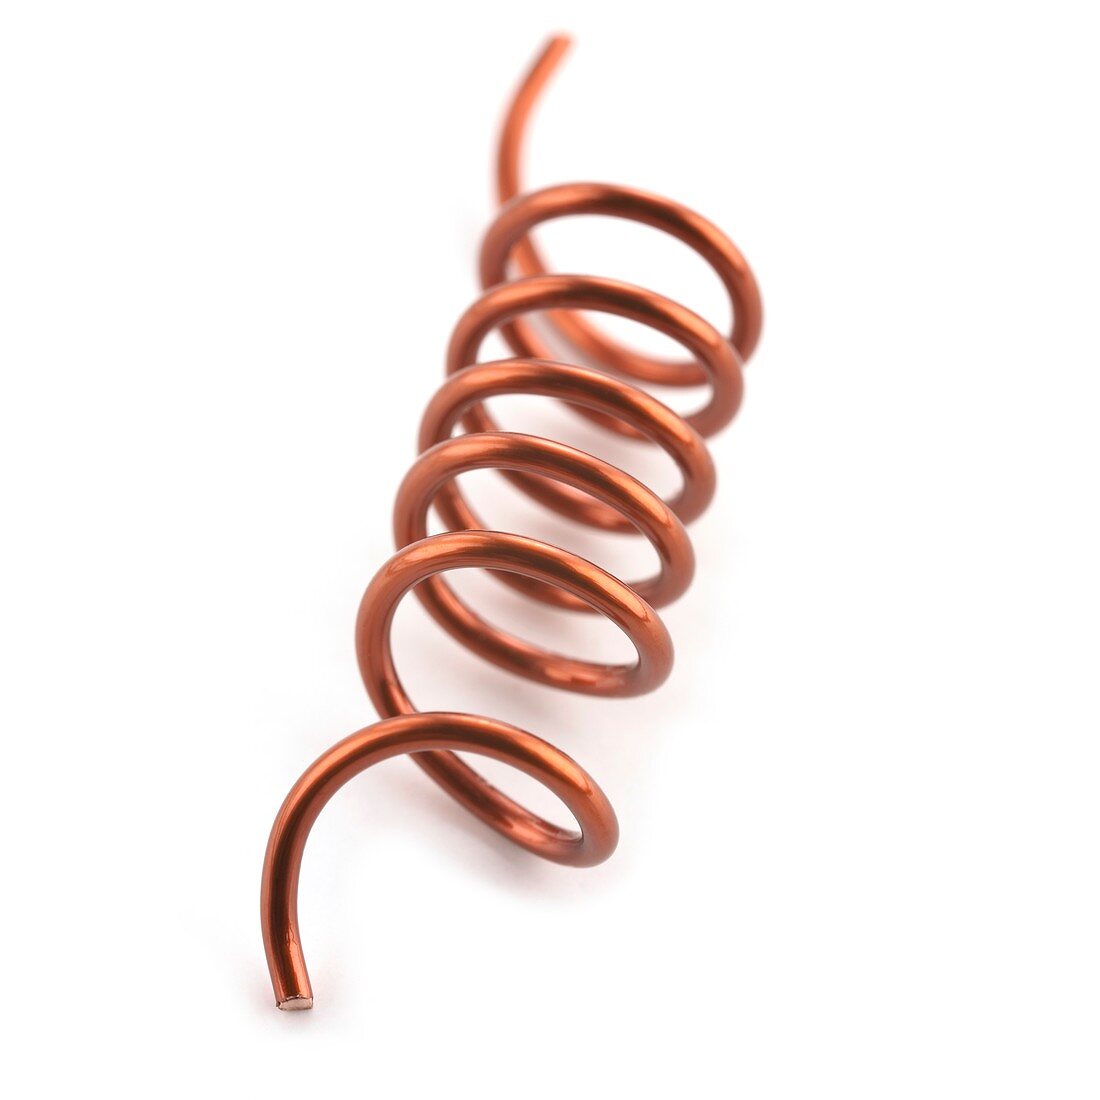 Copper wire coil